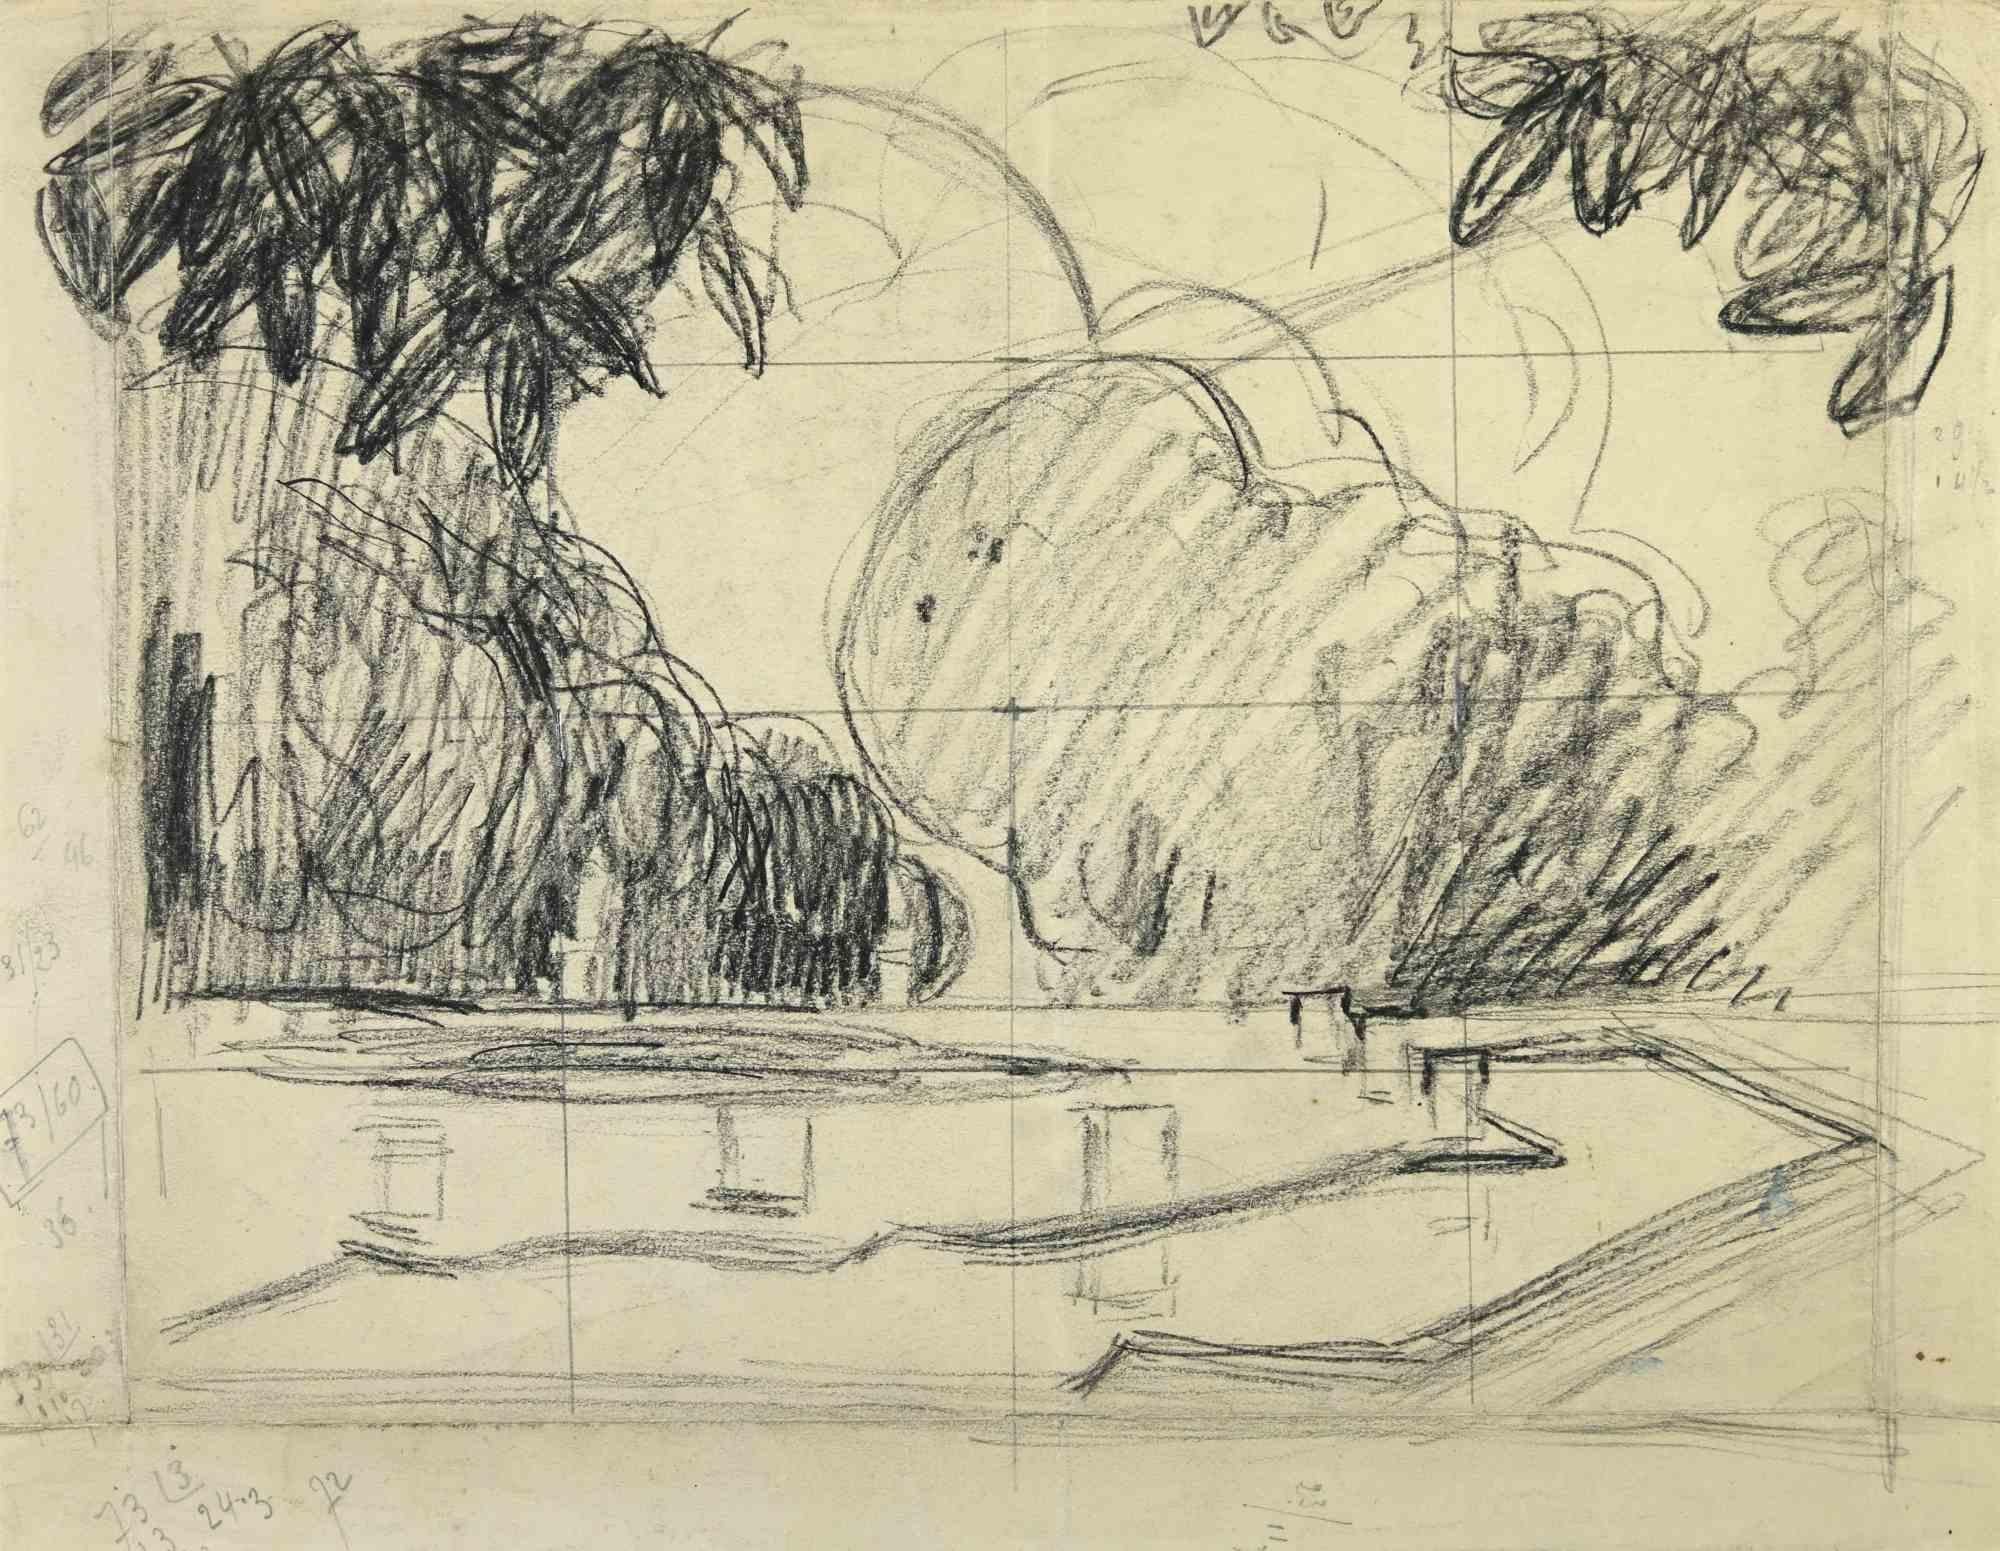 Die Landschaftsstudie ist eine Zeichnung des französischen Künstlers André Meaux Saint-Marc (1885-1941) aus dem frühen 20. Jahrhundert.

Zeichenkohle auf Papier. Handsigniert auf der Rückseite.

